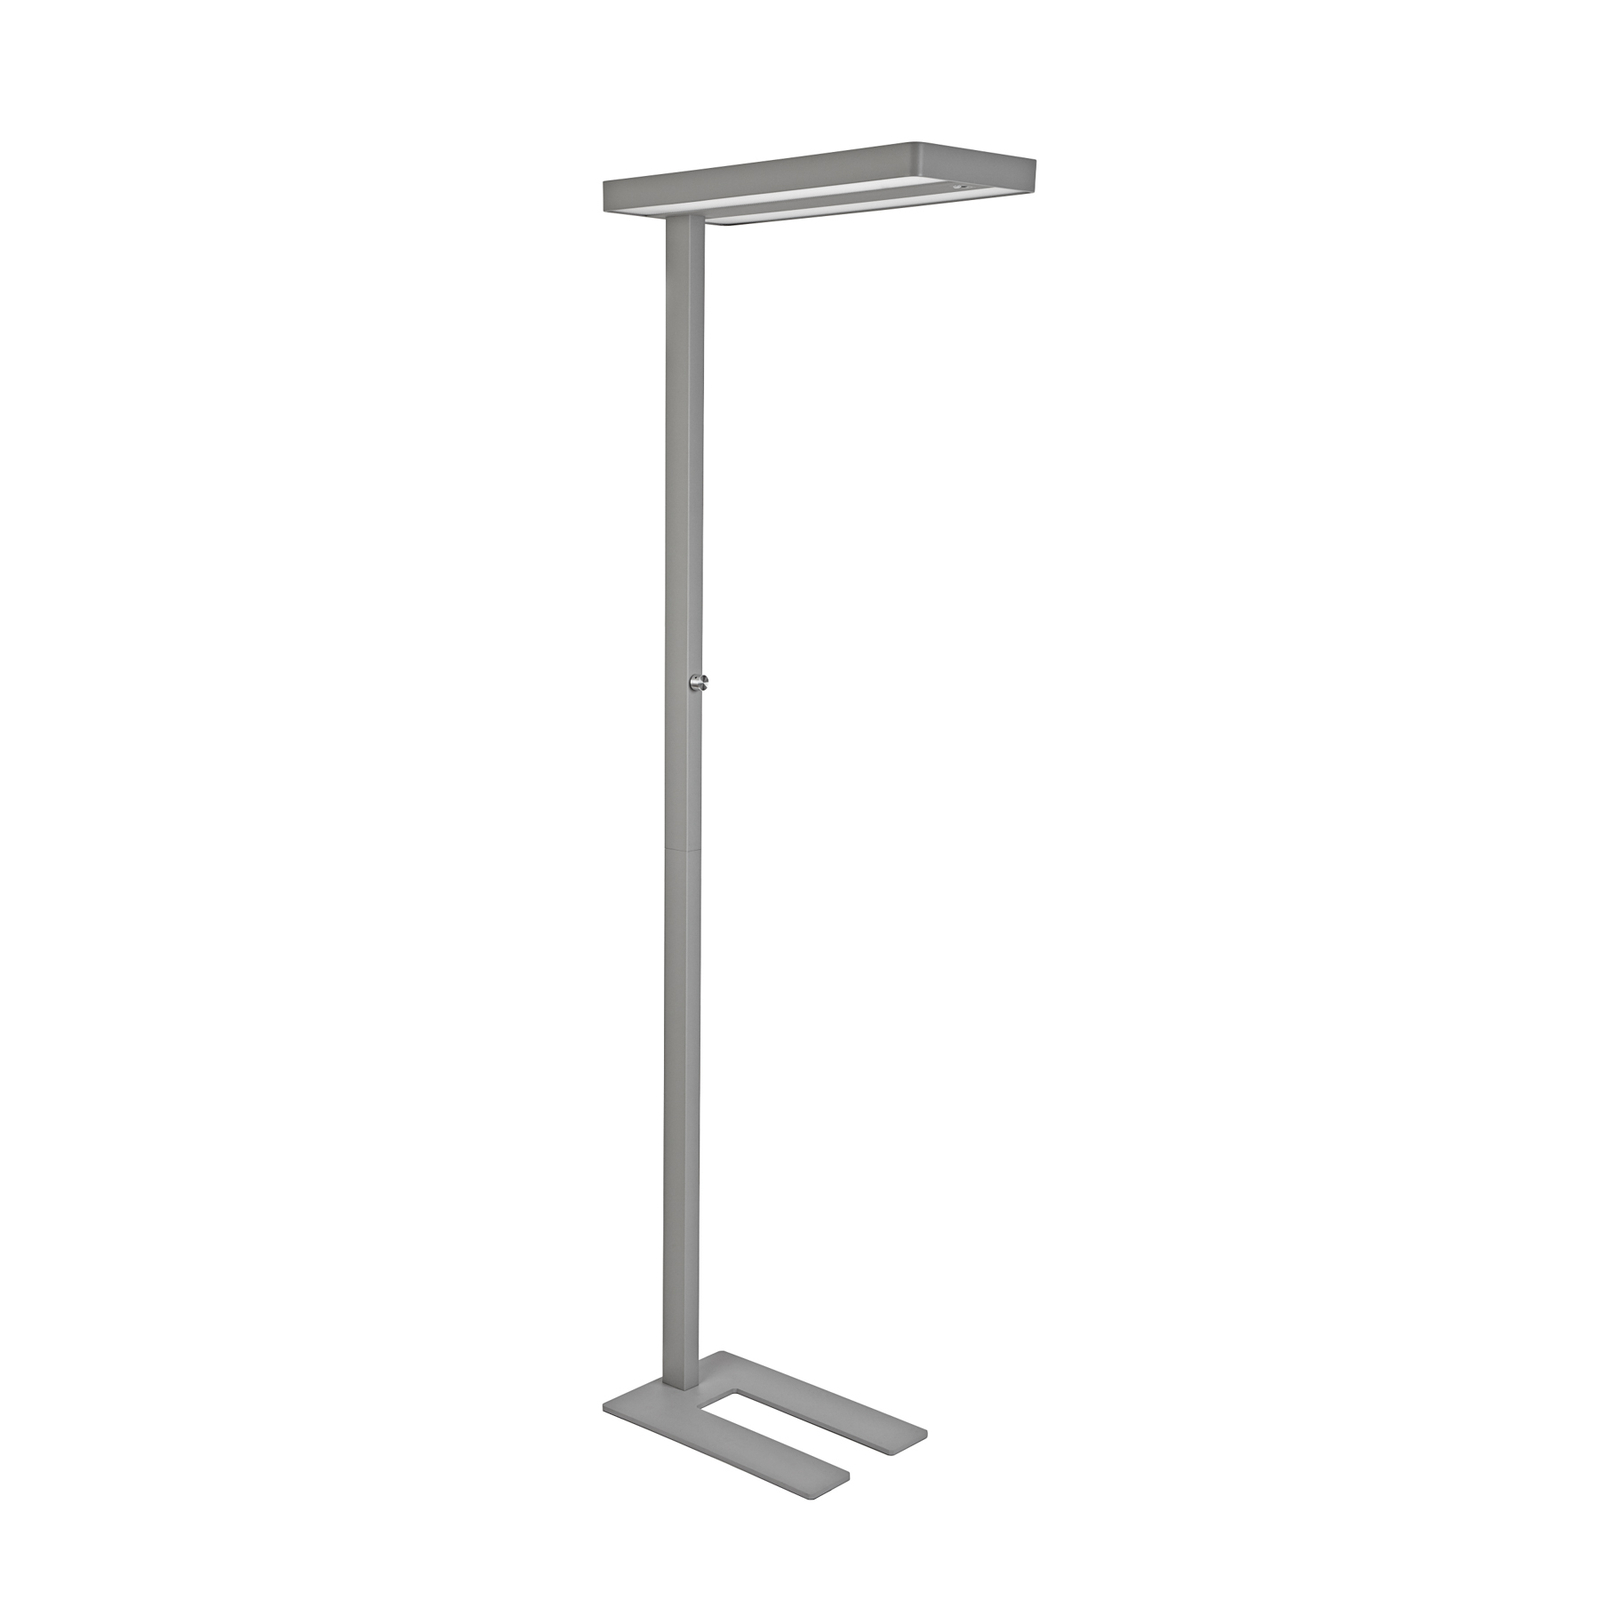 Lampa stojąca LED MAULjuvis, srebrny, stojak